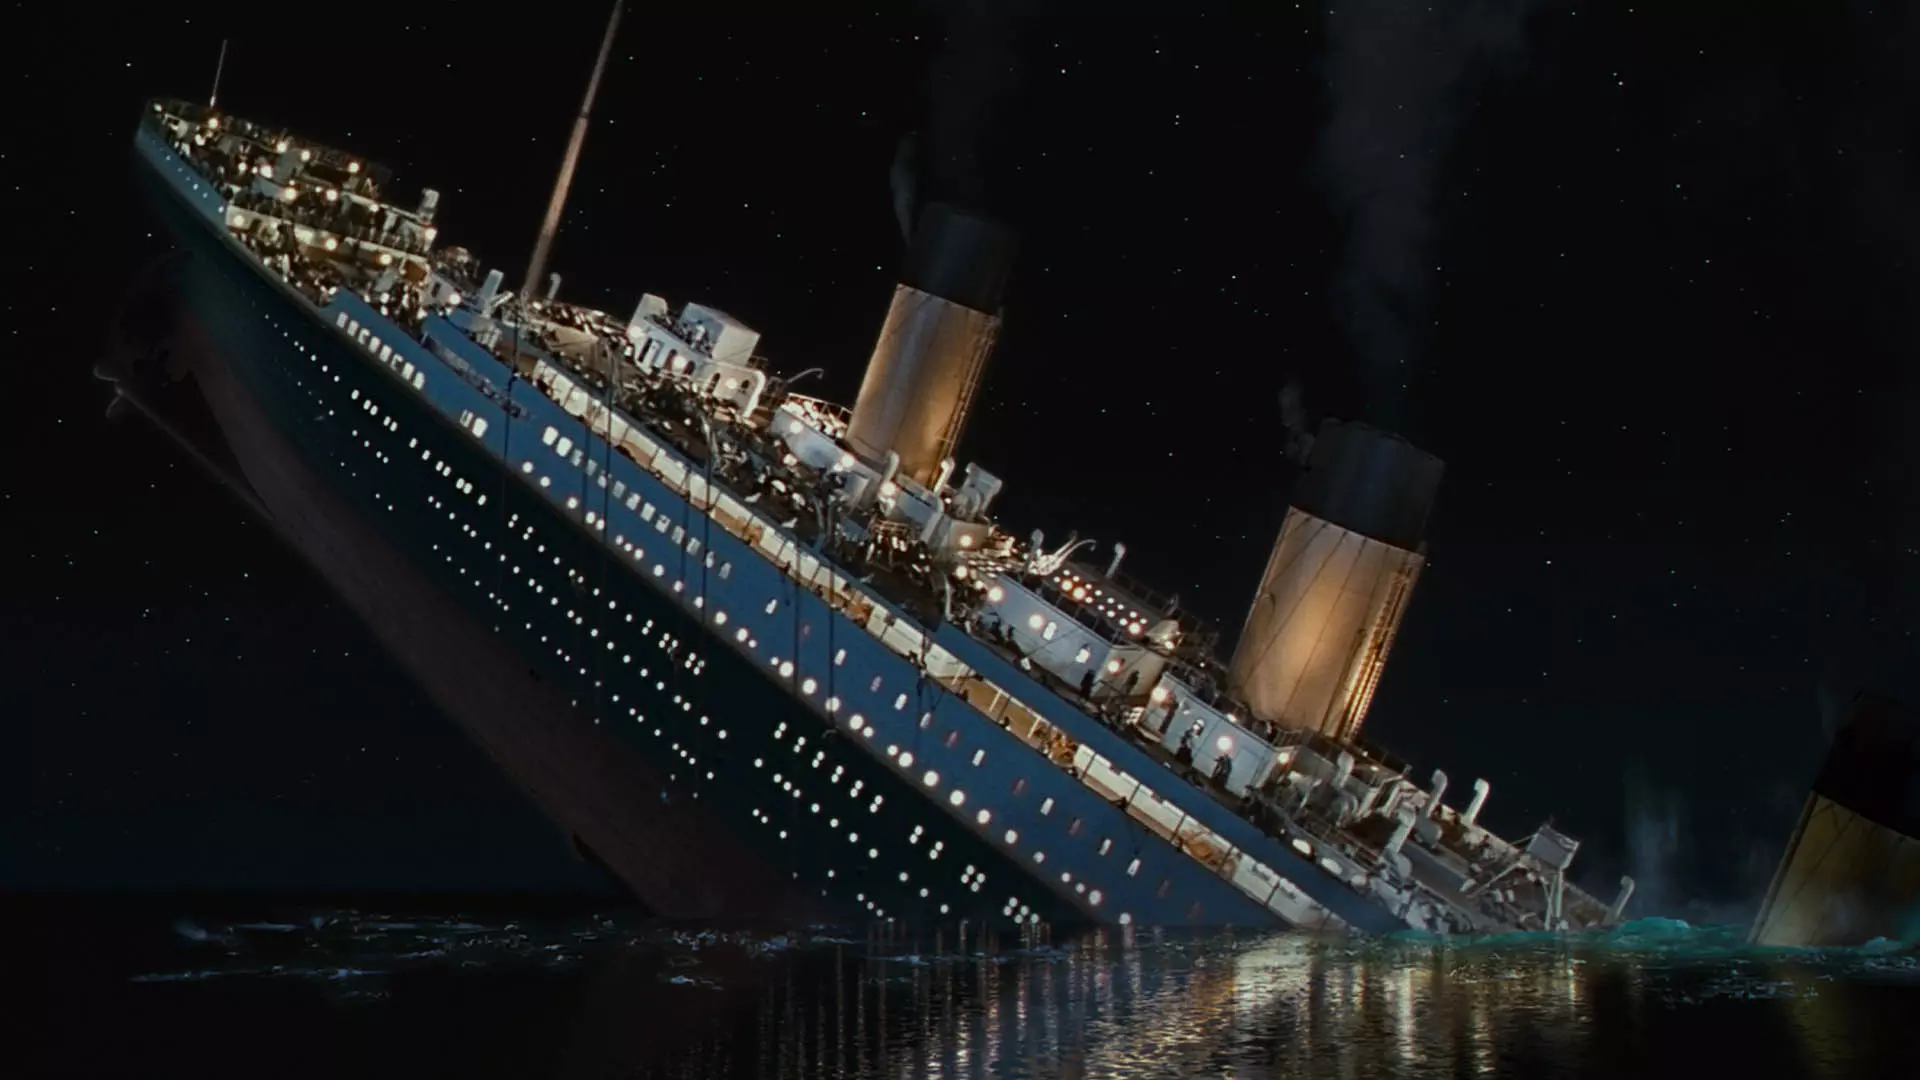 تصویری از کشتی تایتانیک در حال غرق شدن در فیلم Titanic